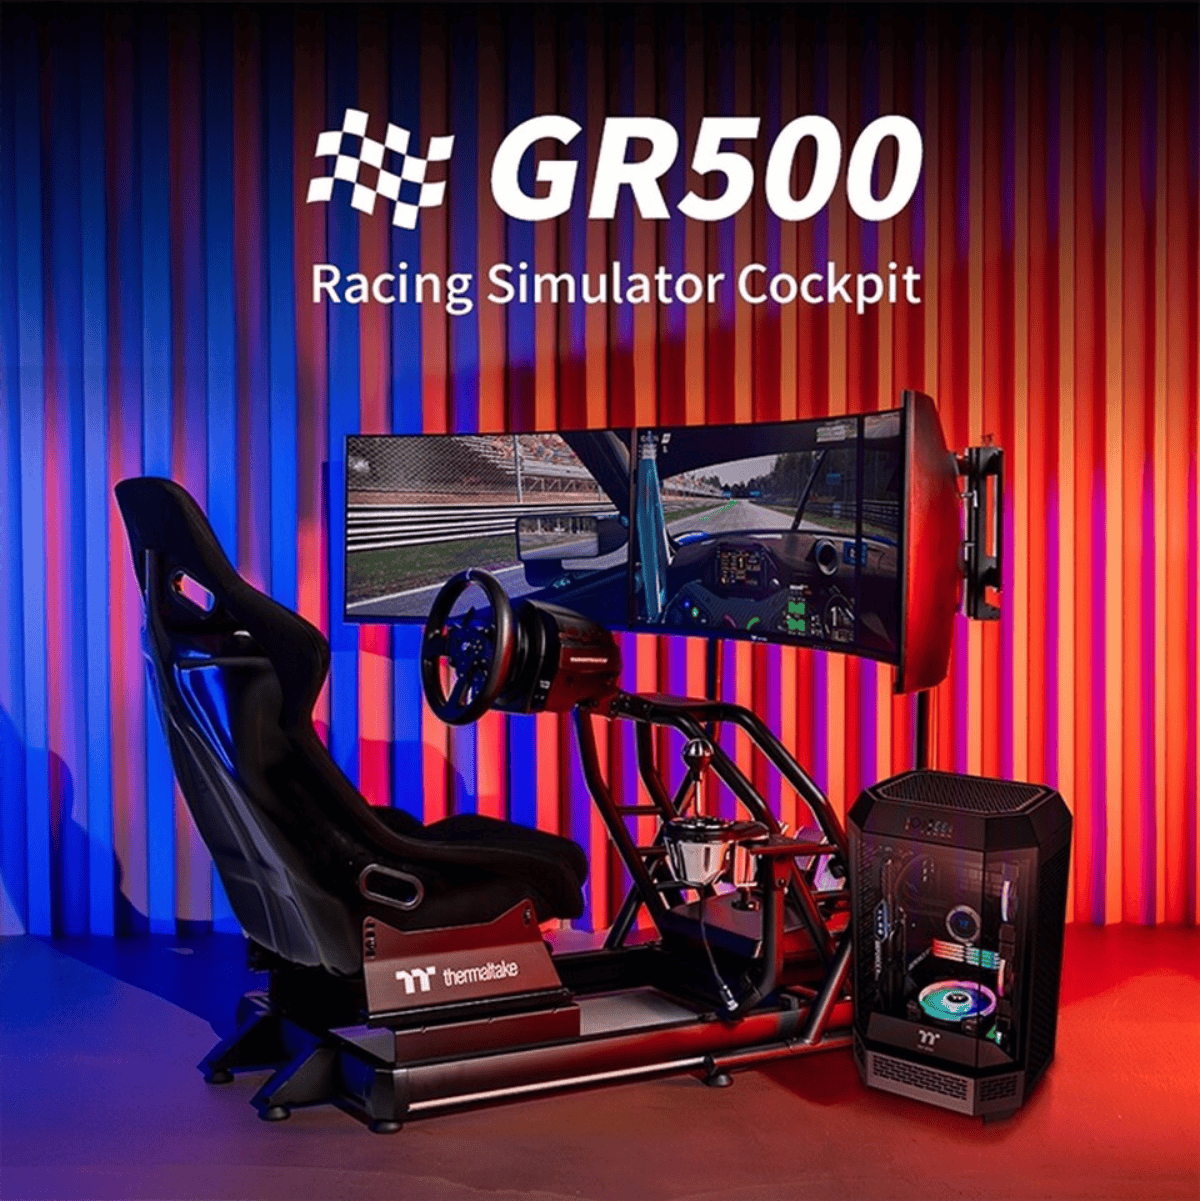 曜越推出GR500赛车模拟器驾驶舱和三屏显示器支架 配有玻璃纤维座椅